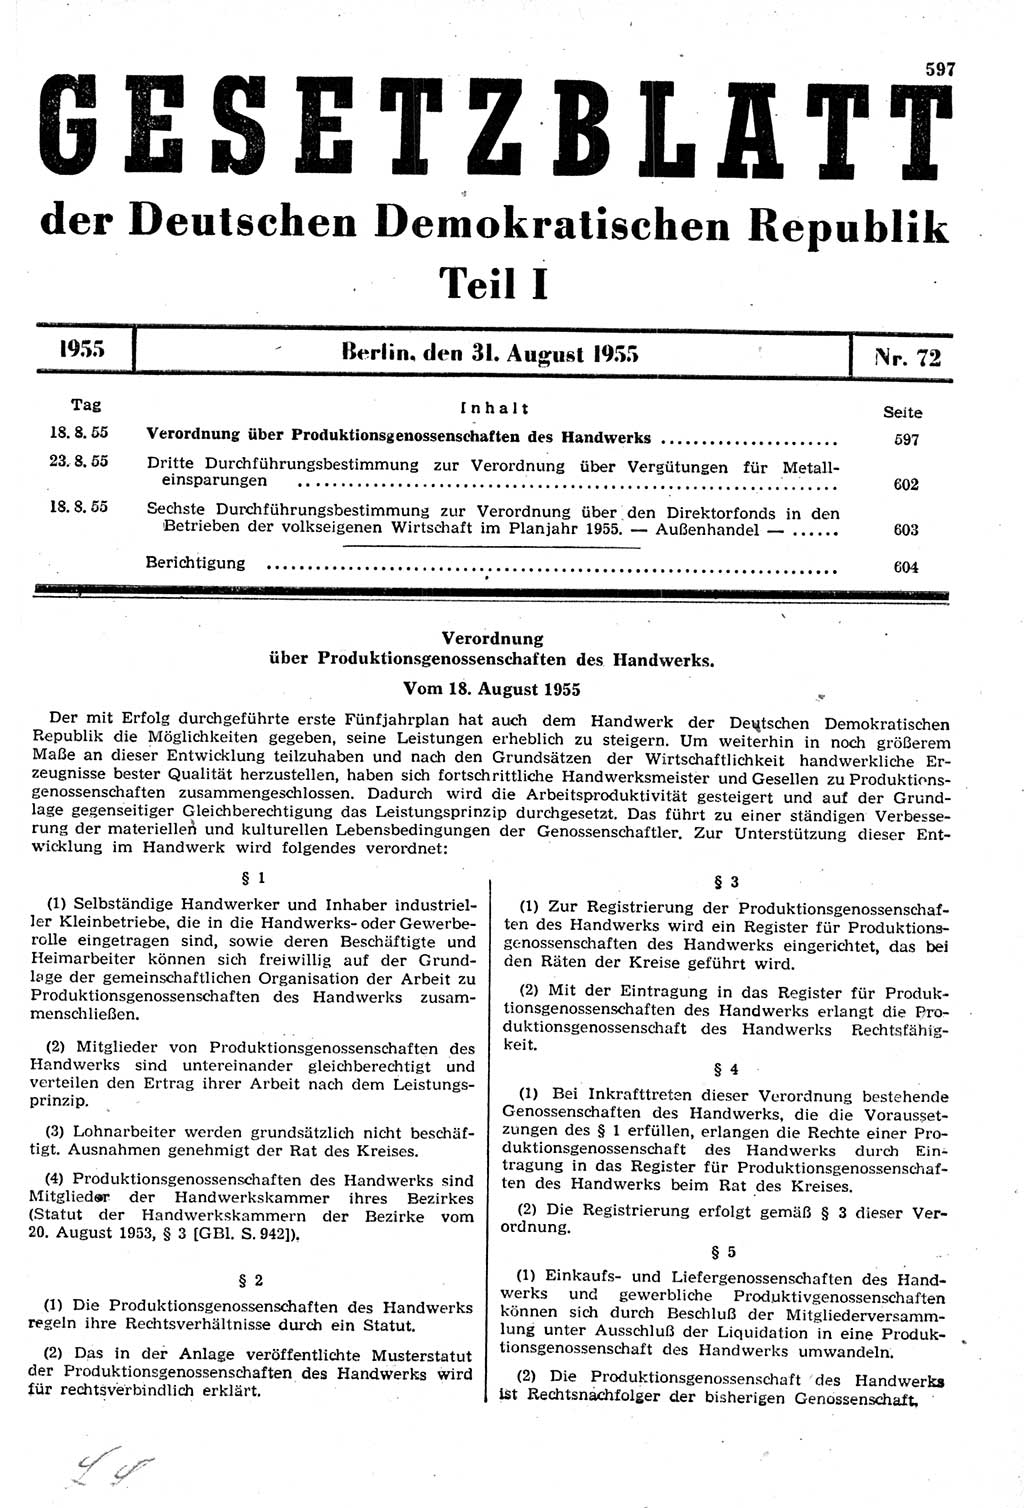 Gesetzblatt (GBl.) der Deutschen Demokratischen Republik (DDR) Teil Ⅰ 1955, Seite 597 (GBl. DDR Ⅰ 1955, S. 597)